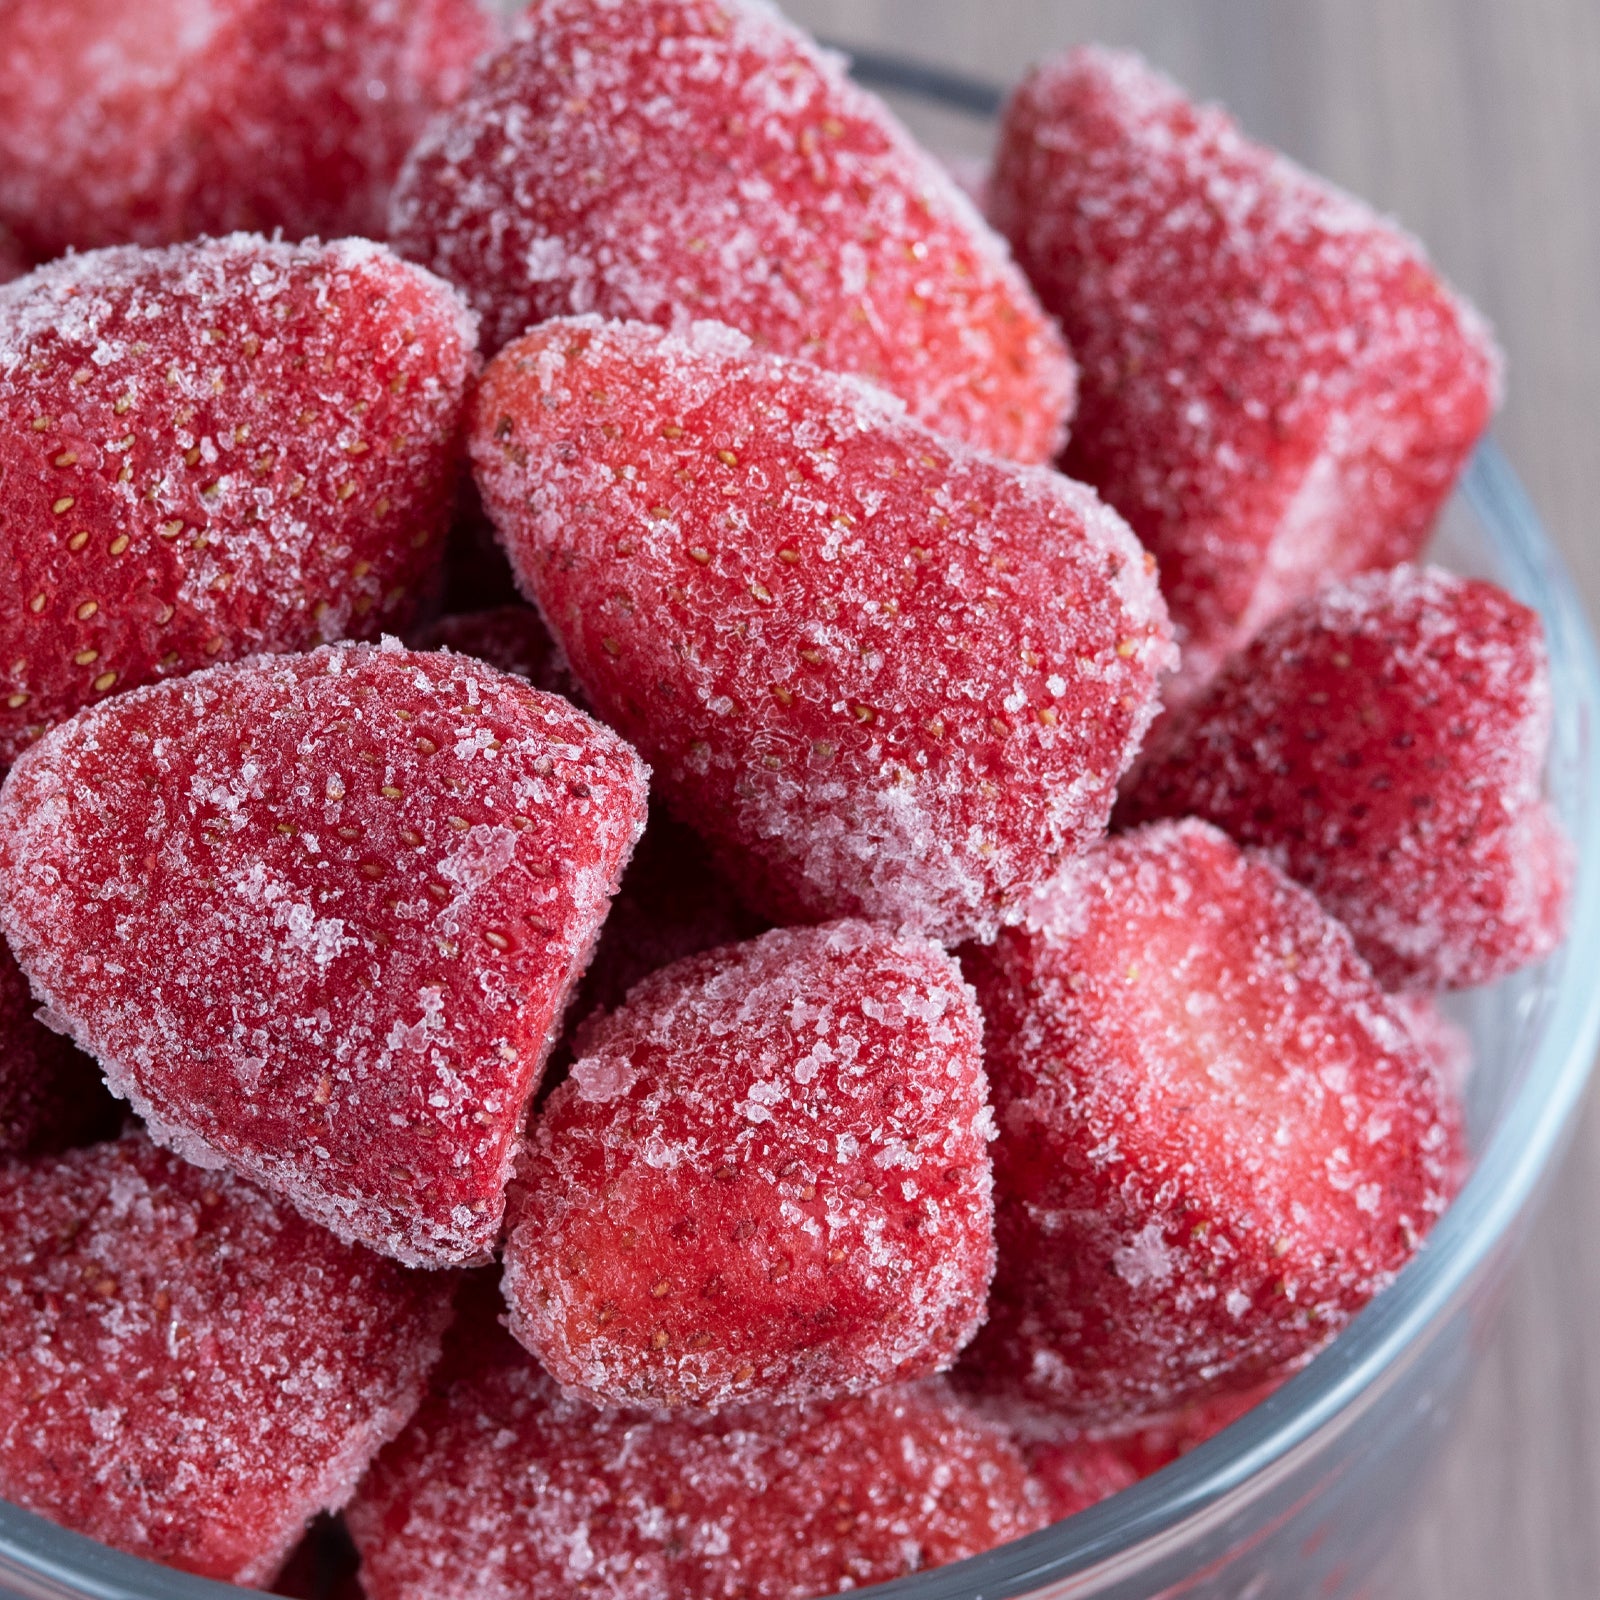 有機 JAS オーガニック 冷凍 ストロベリー いちご 苺 トルコ産 化学物質不使用 (1kg) ホライズンファームズ